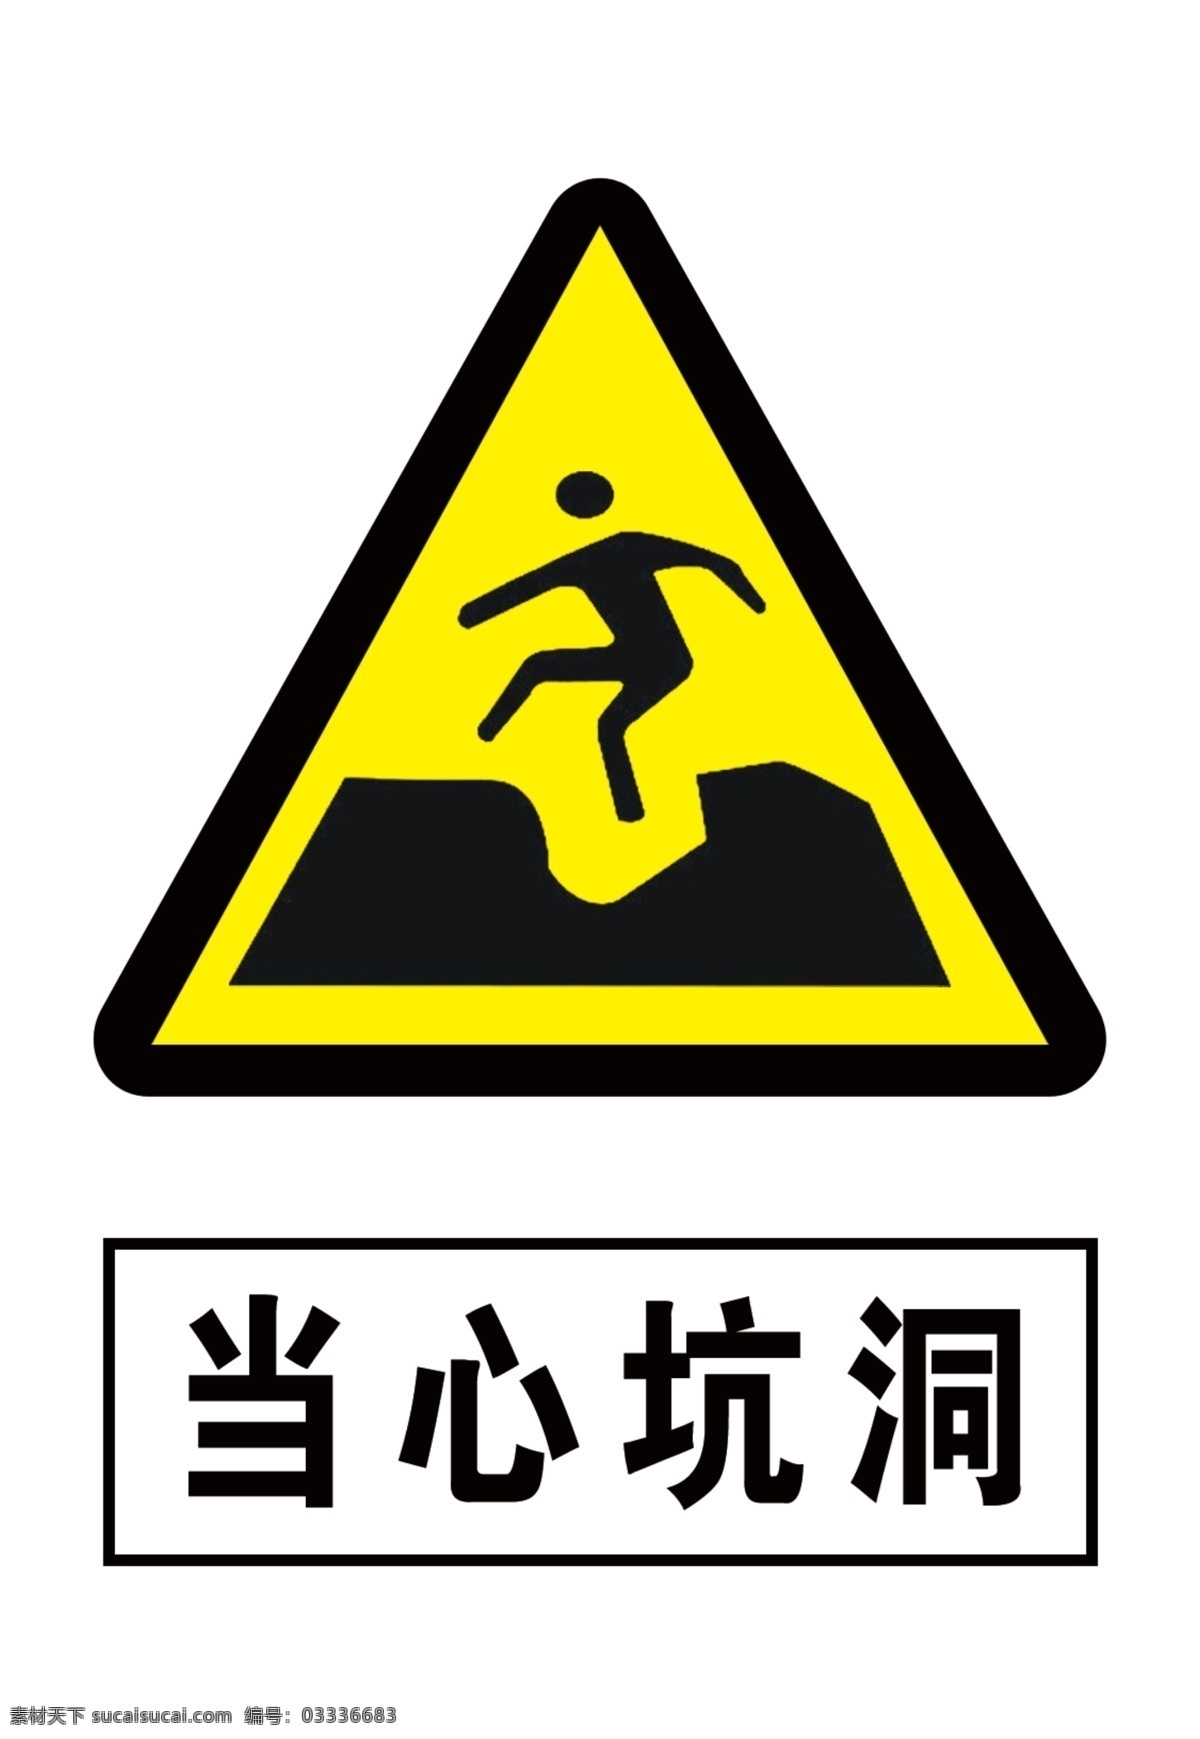 当心坑洞 坑洞 提示标志 安全标志 警告标志 分层